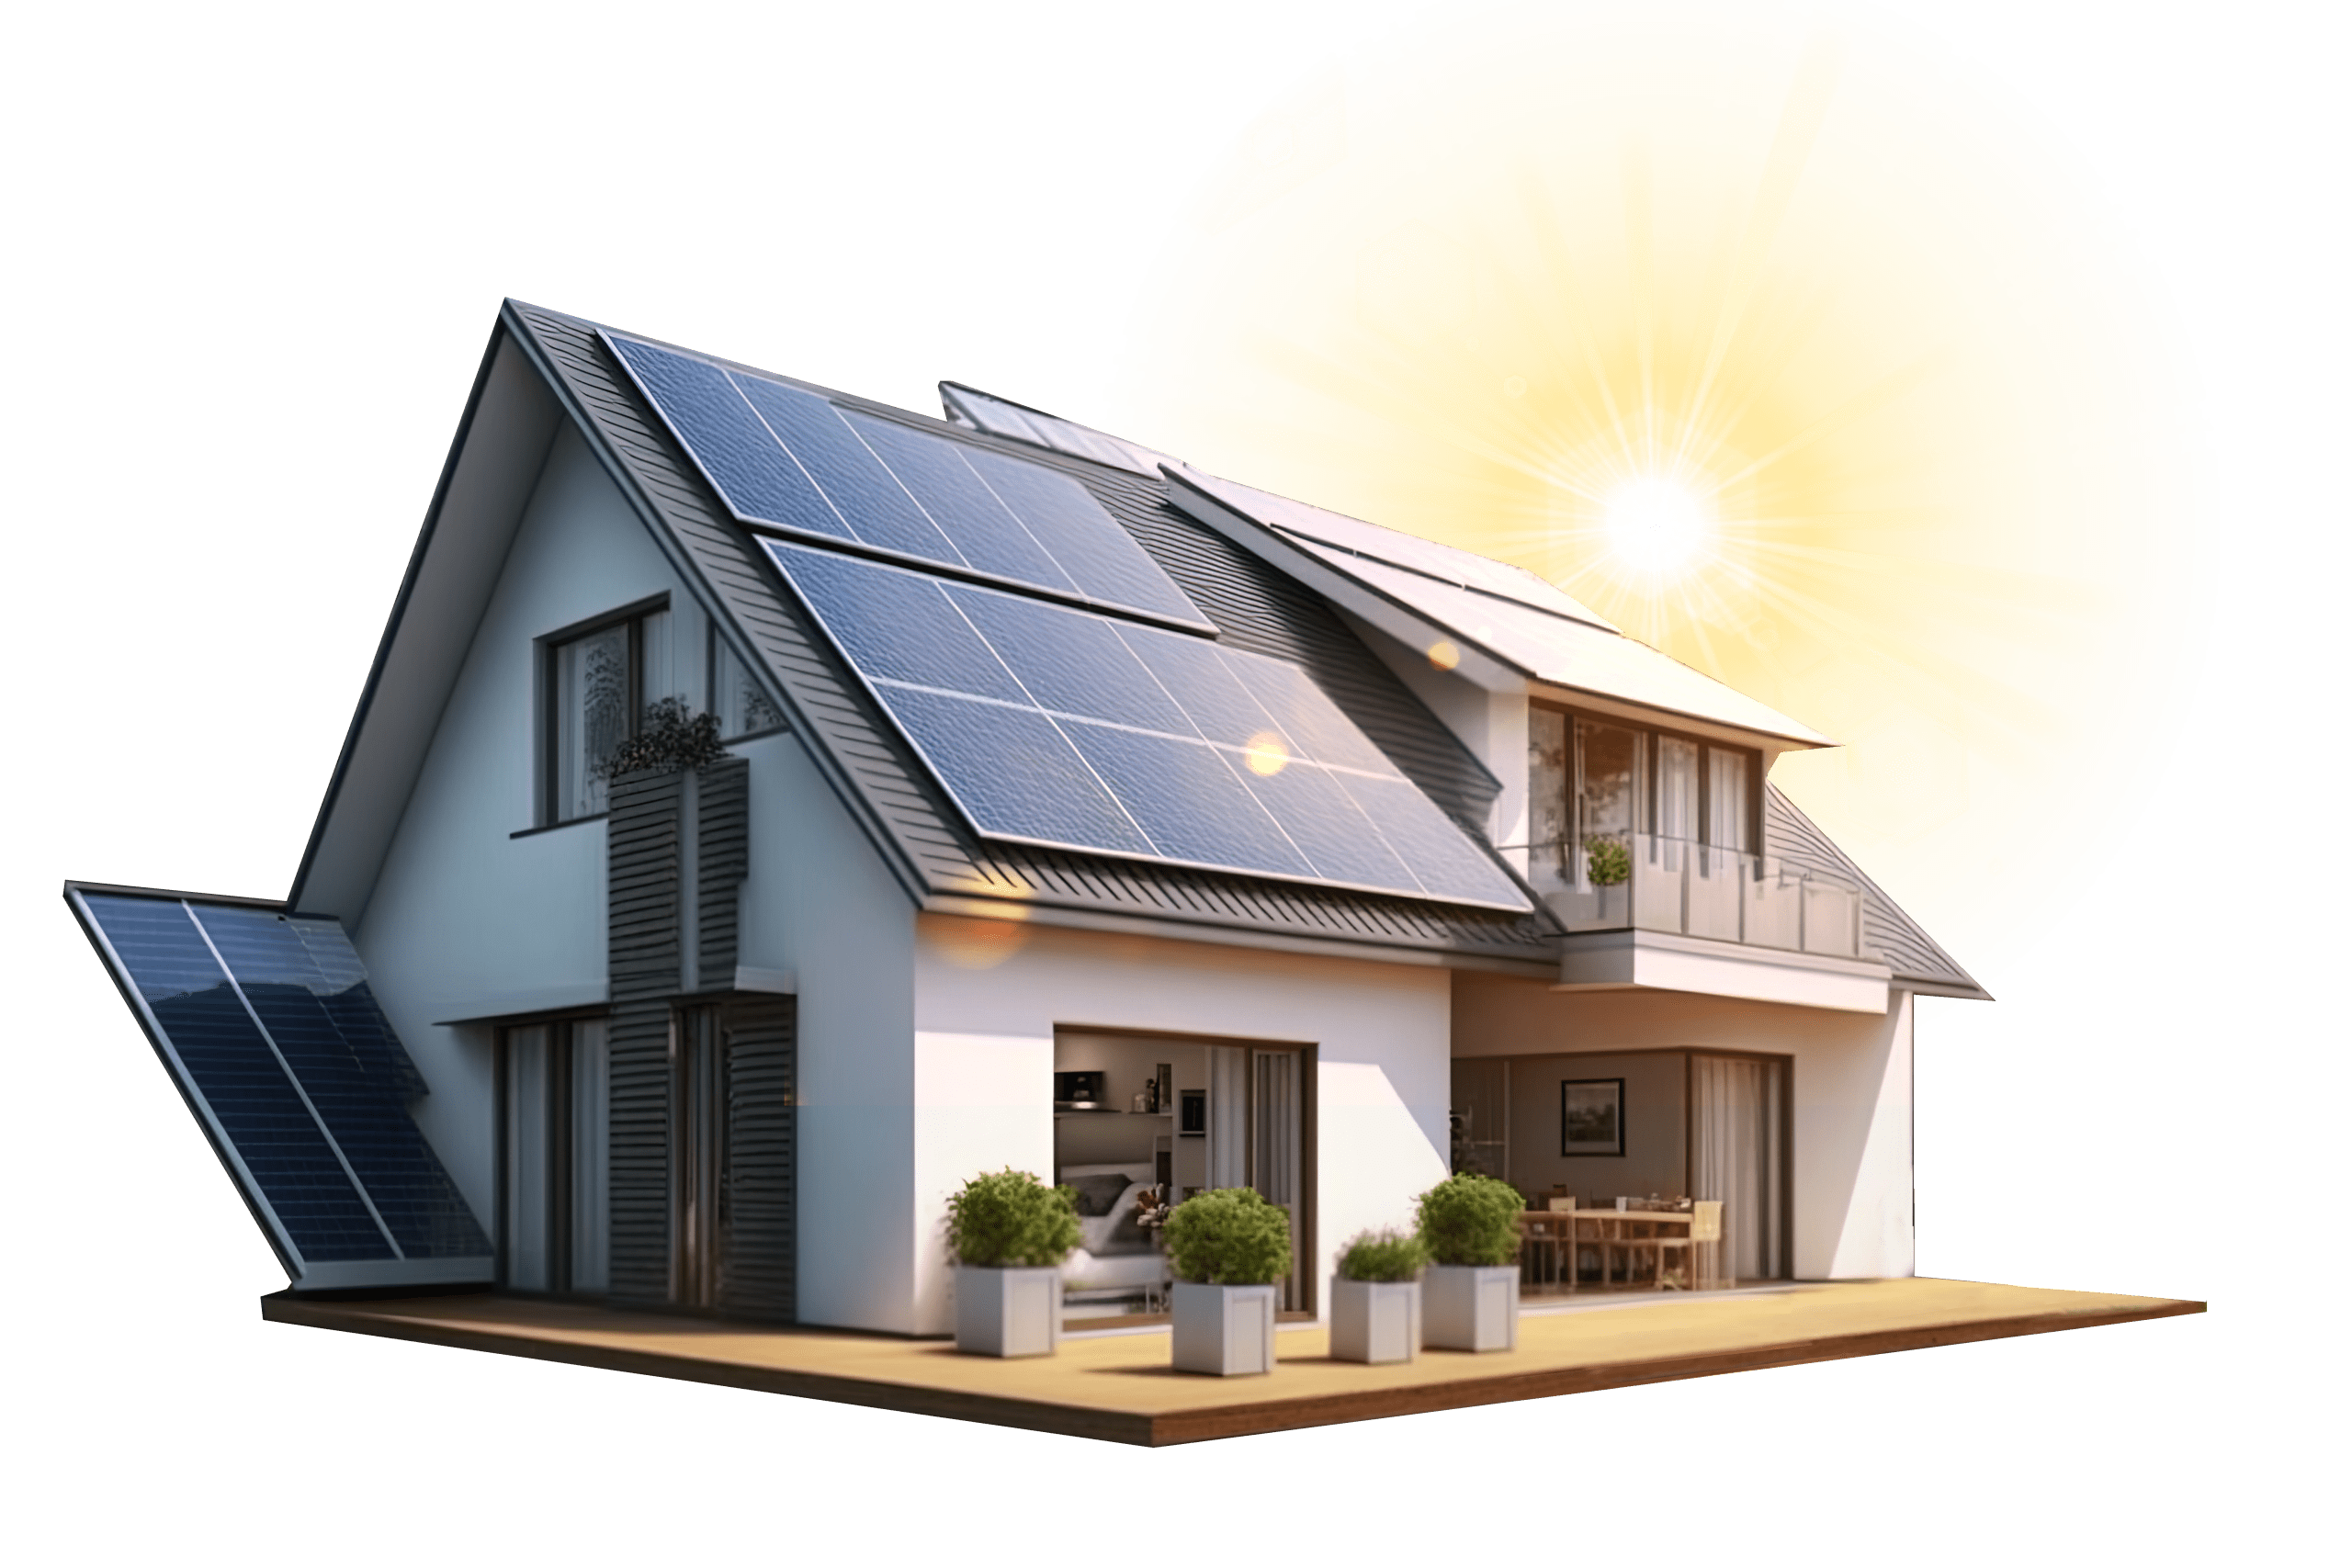 Eine Villa mit Photovoltaikmodulen auf dem Dach